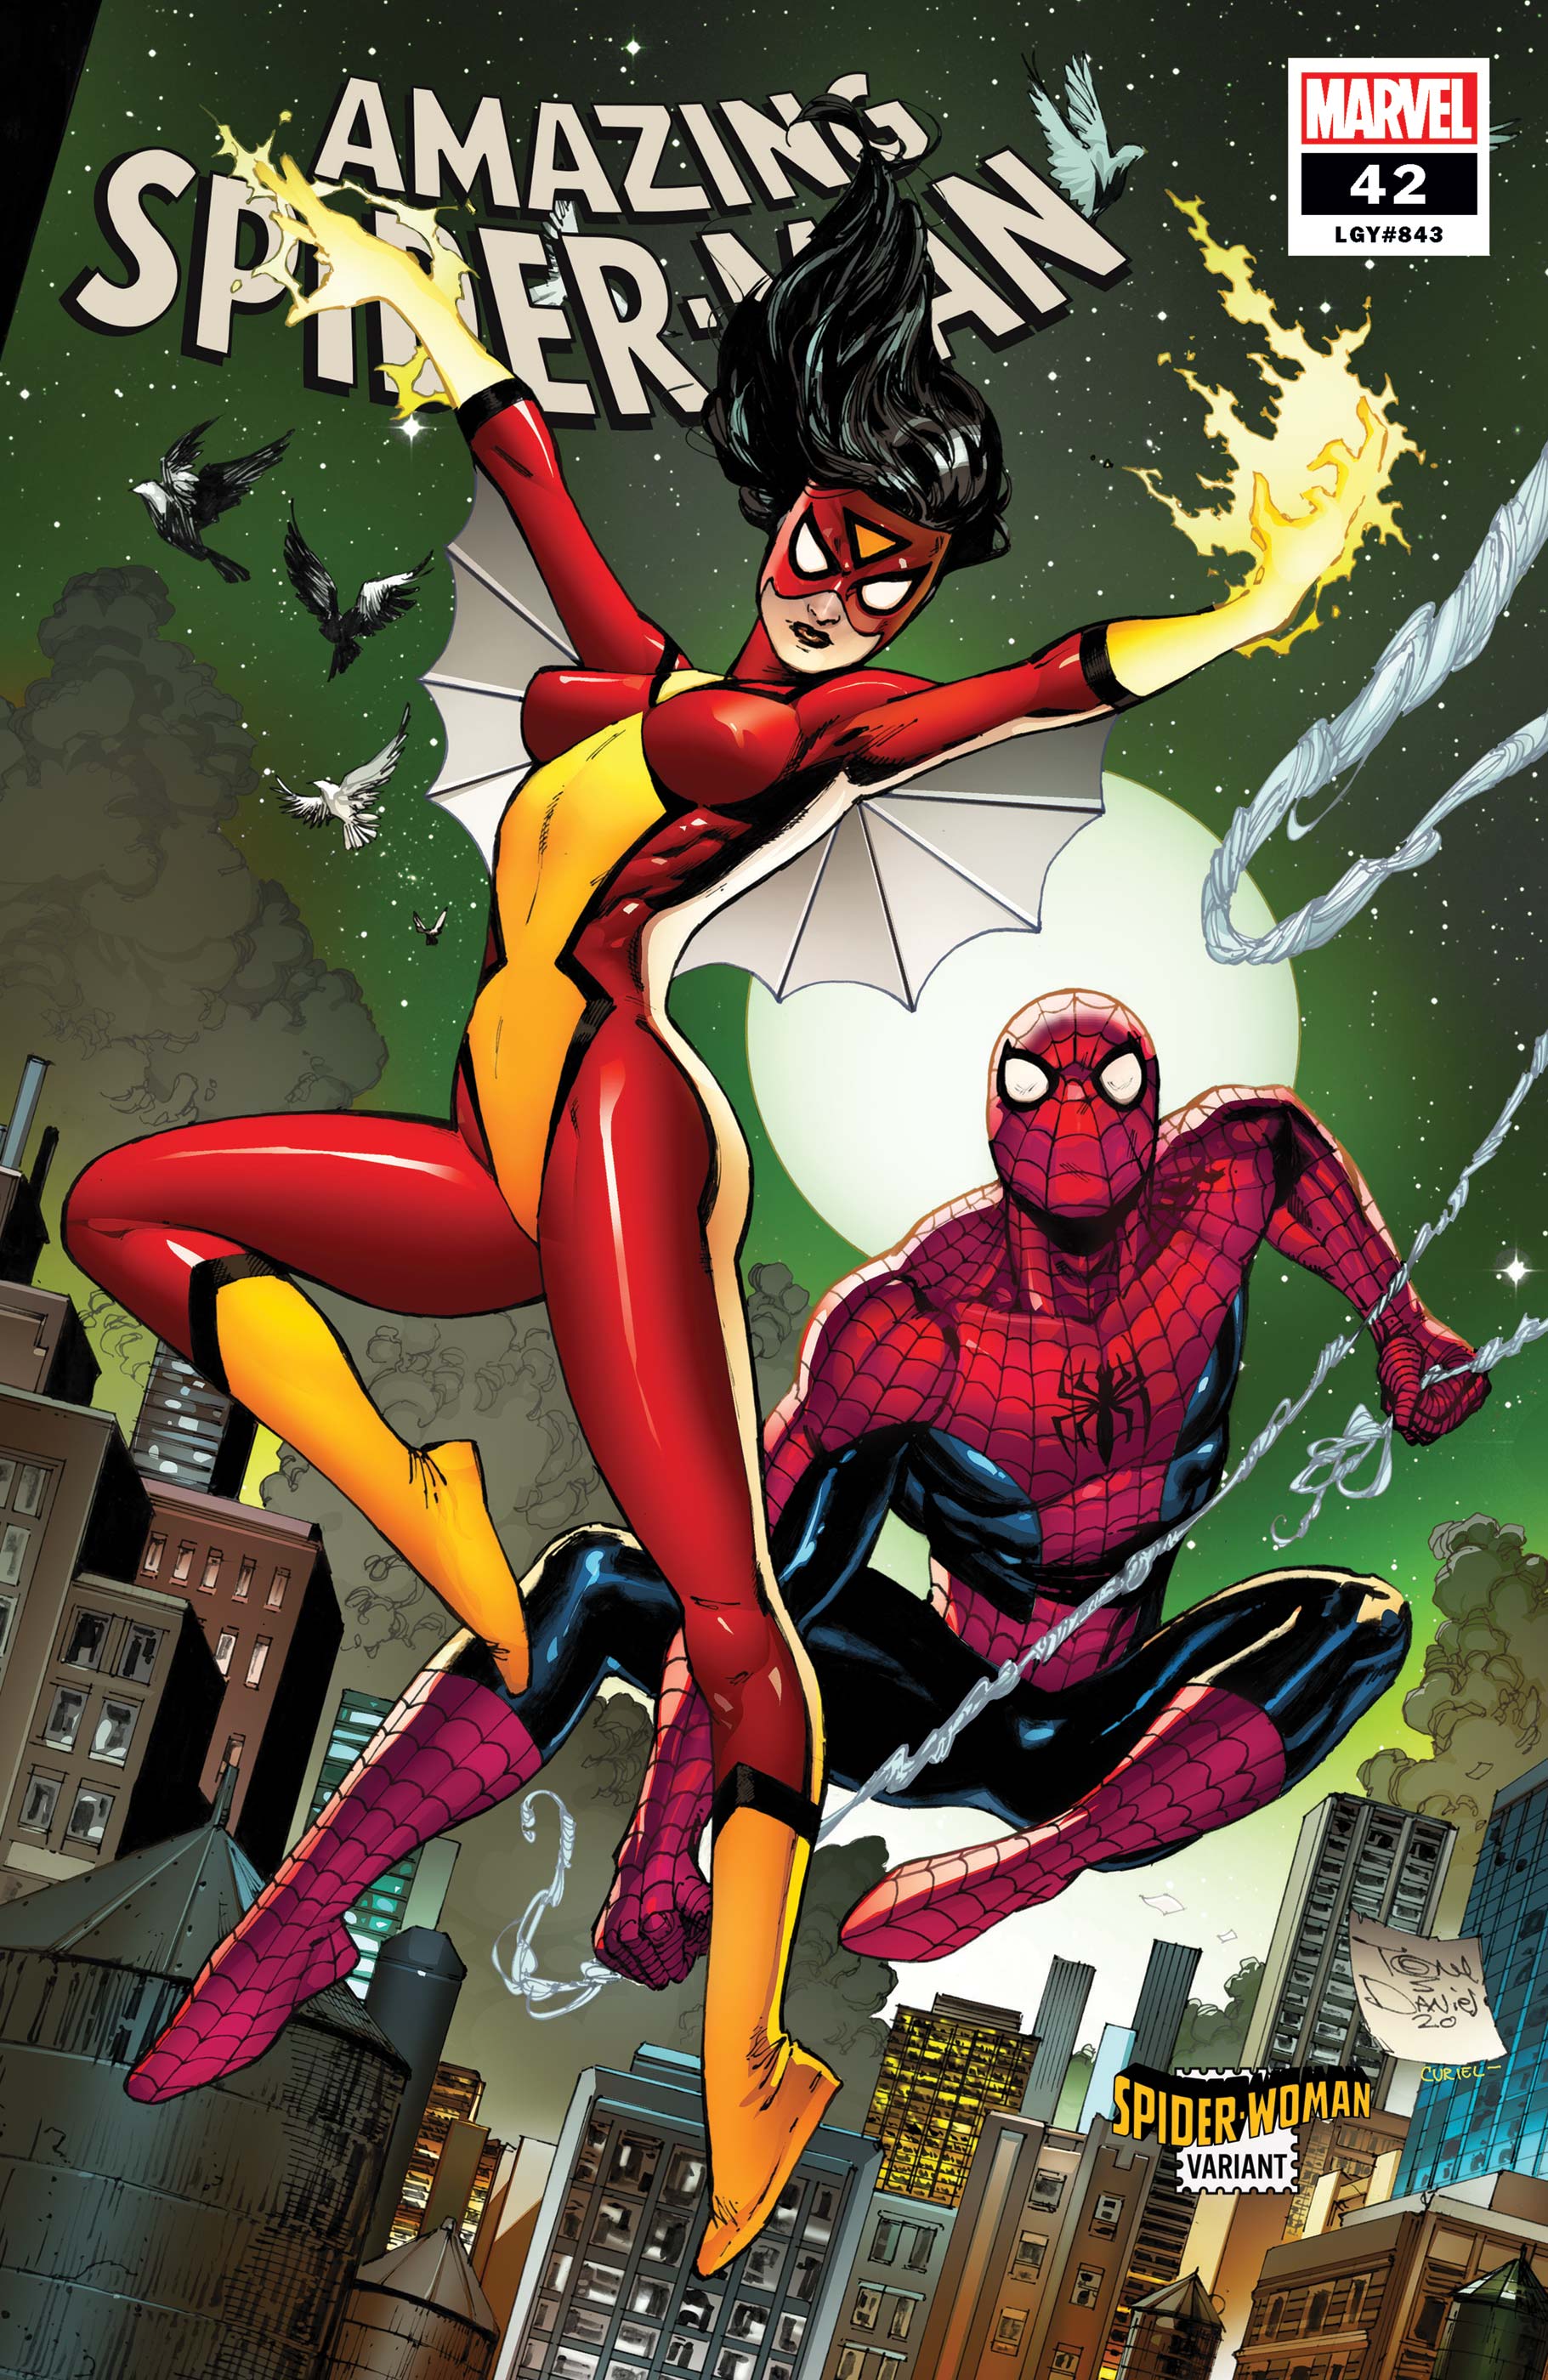 Amazing Spider-Man #42 Daniel Spider-Woman Variant (2018)